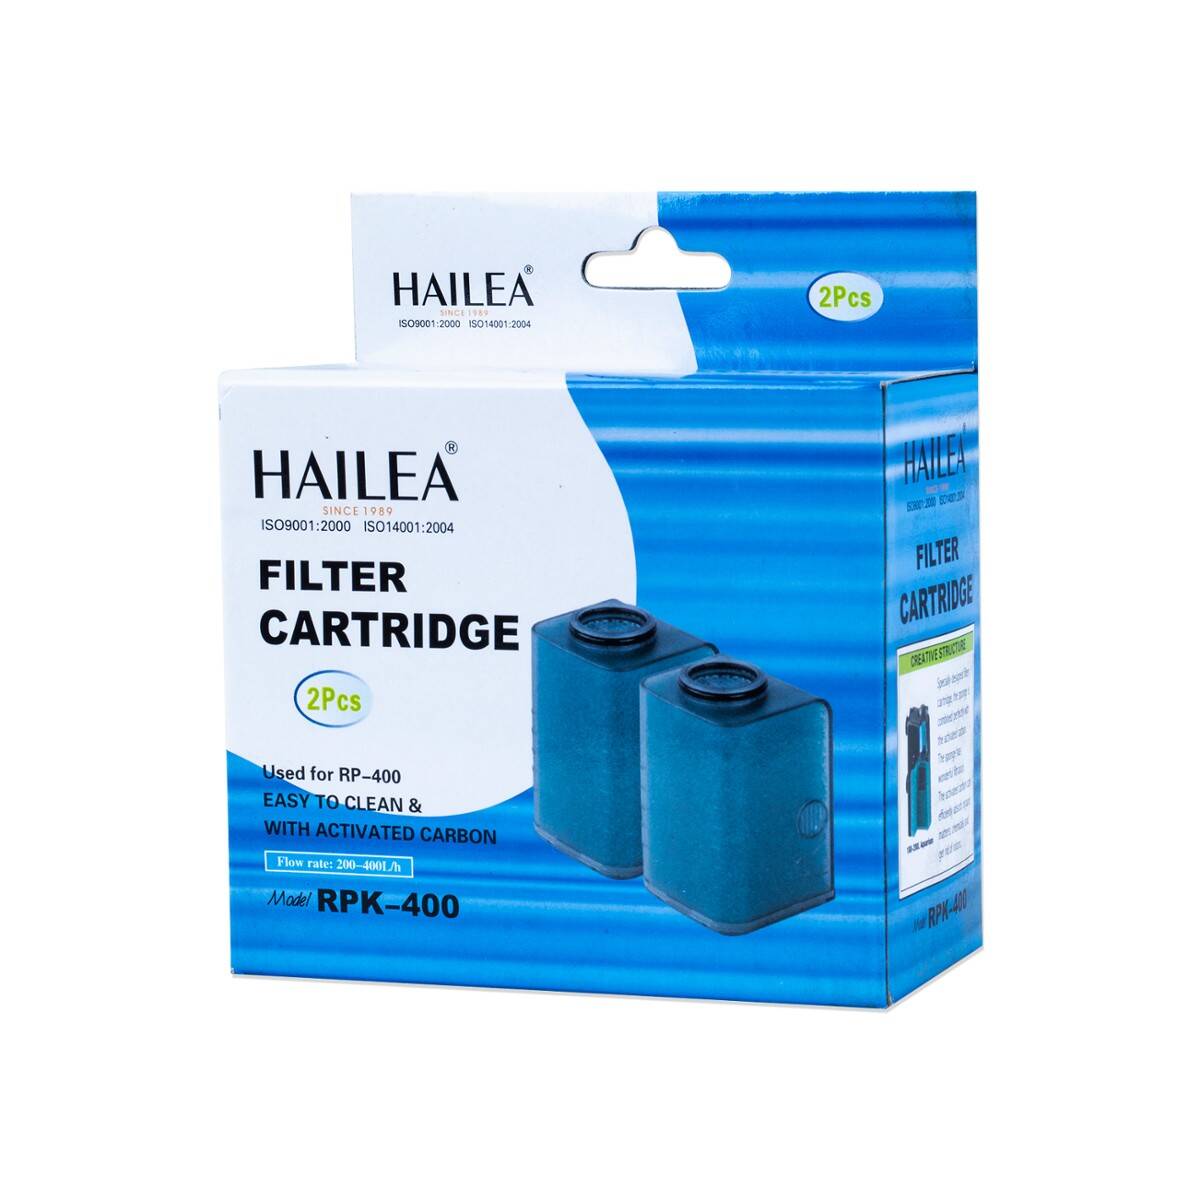 Ersatzpatrone für den RP 400-Filter Hailea (S-F407HA)